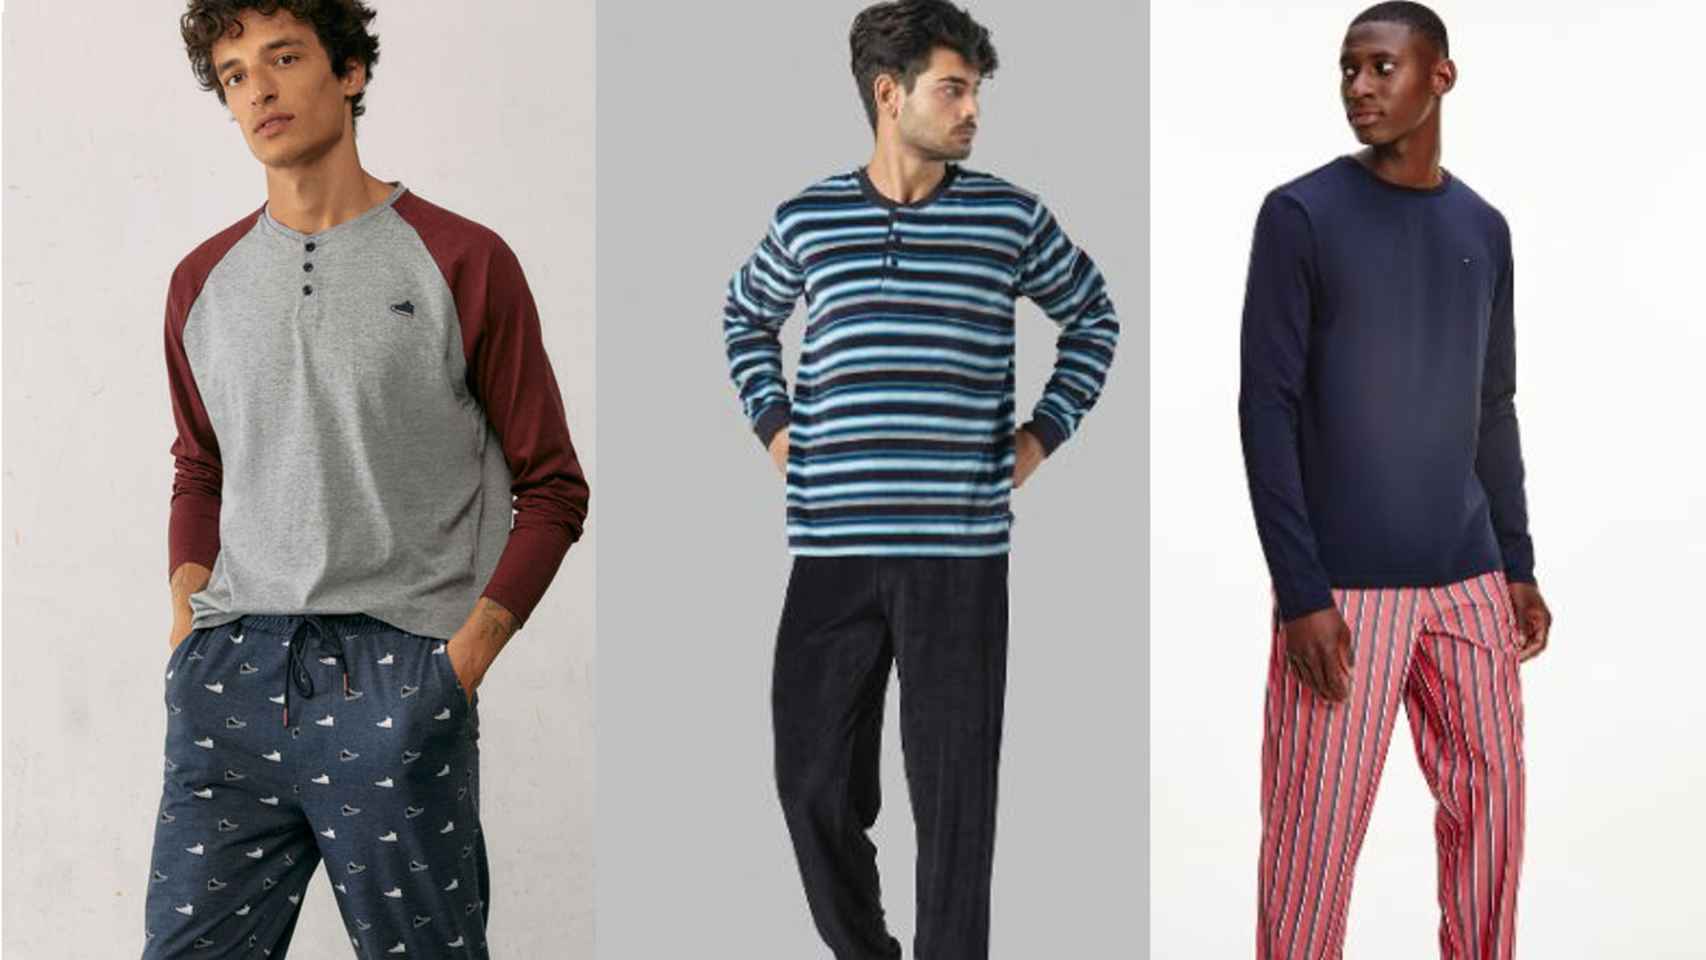 Las pijamas para hombre con las que podrás dormir con estilo